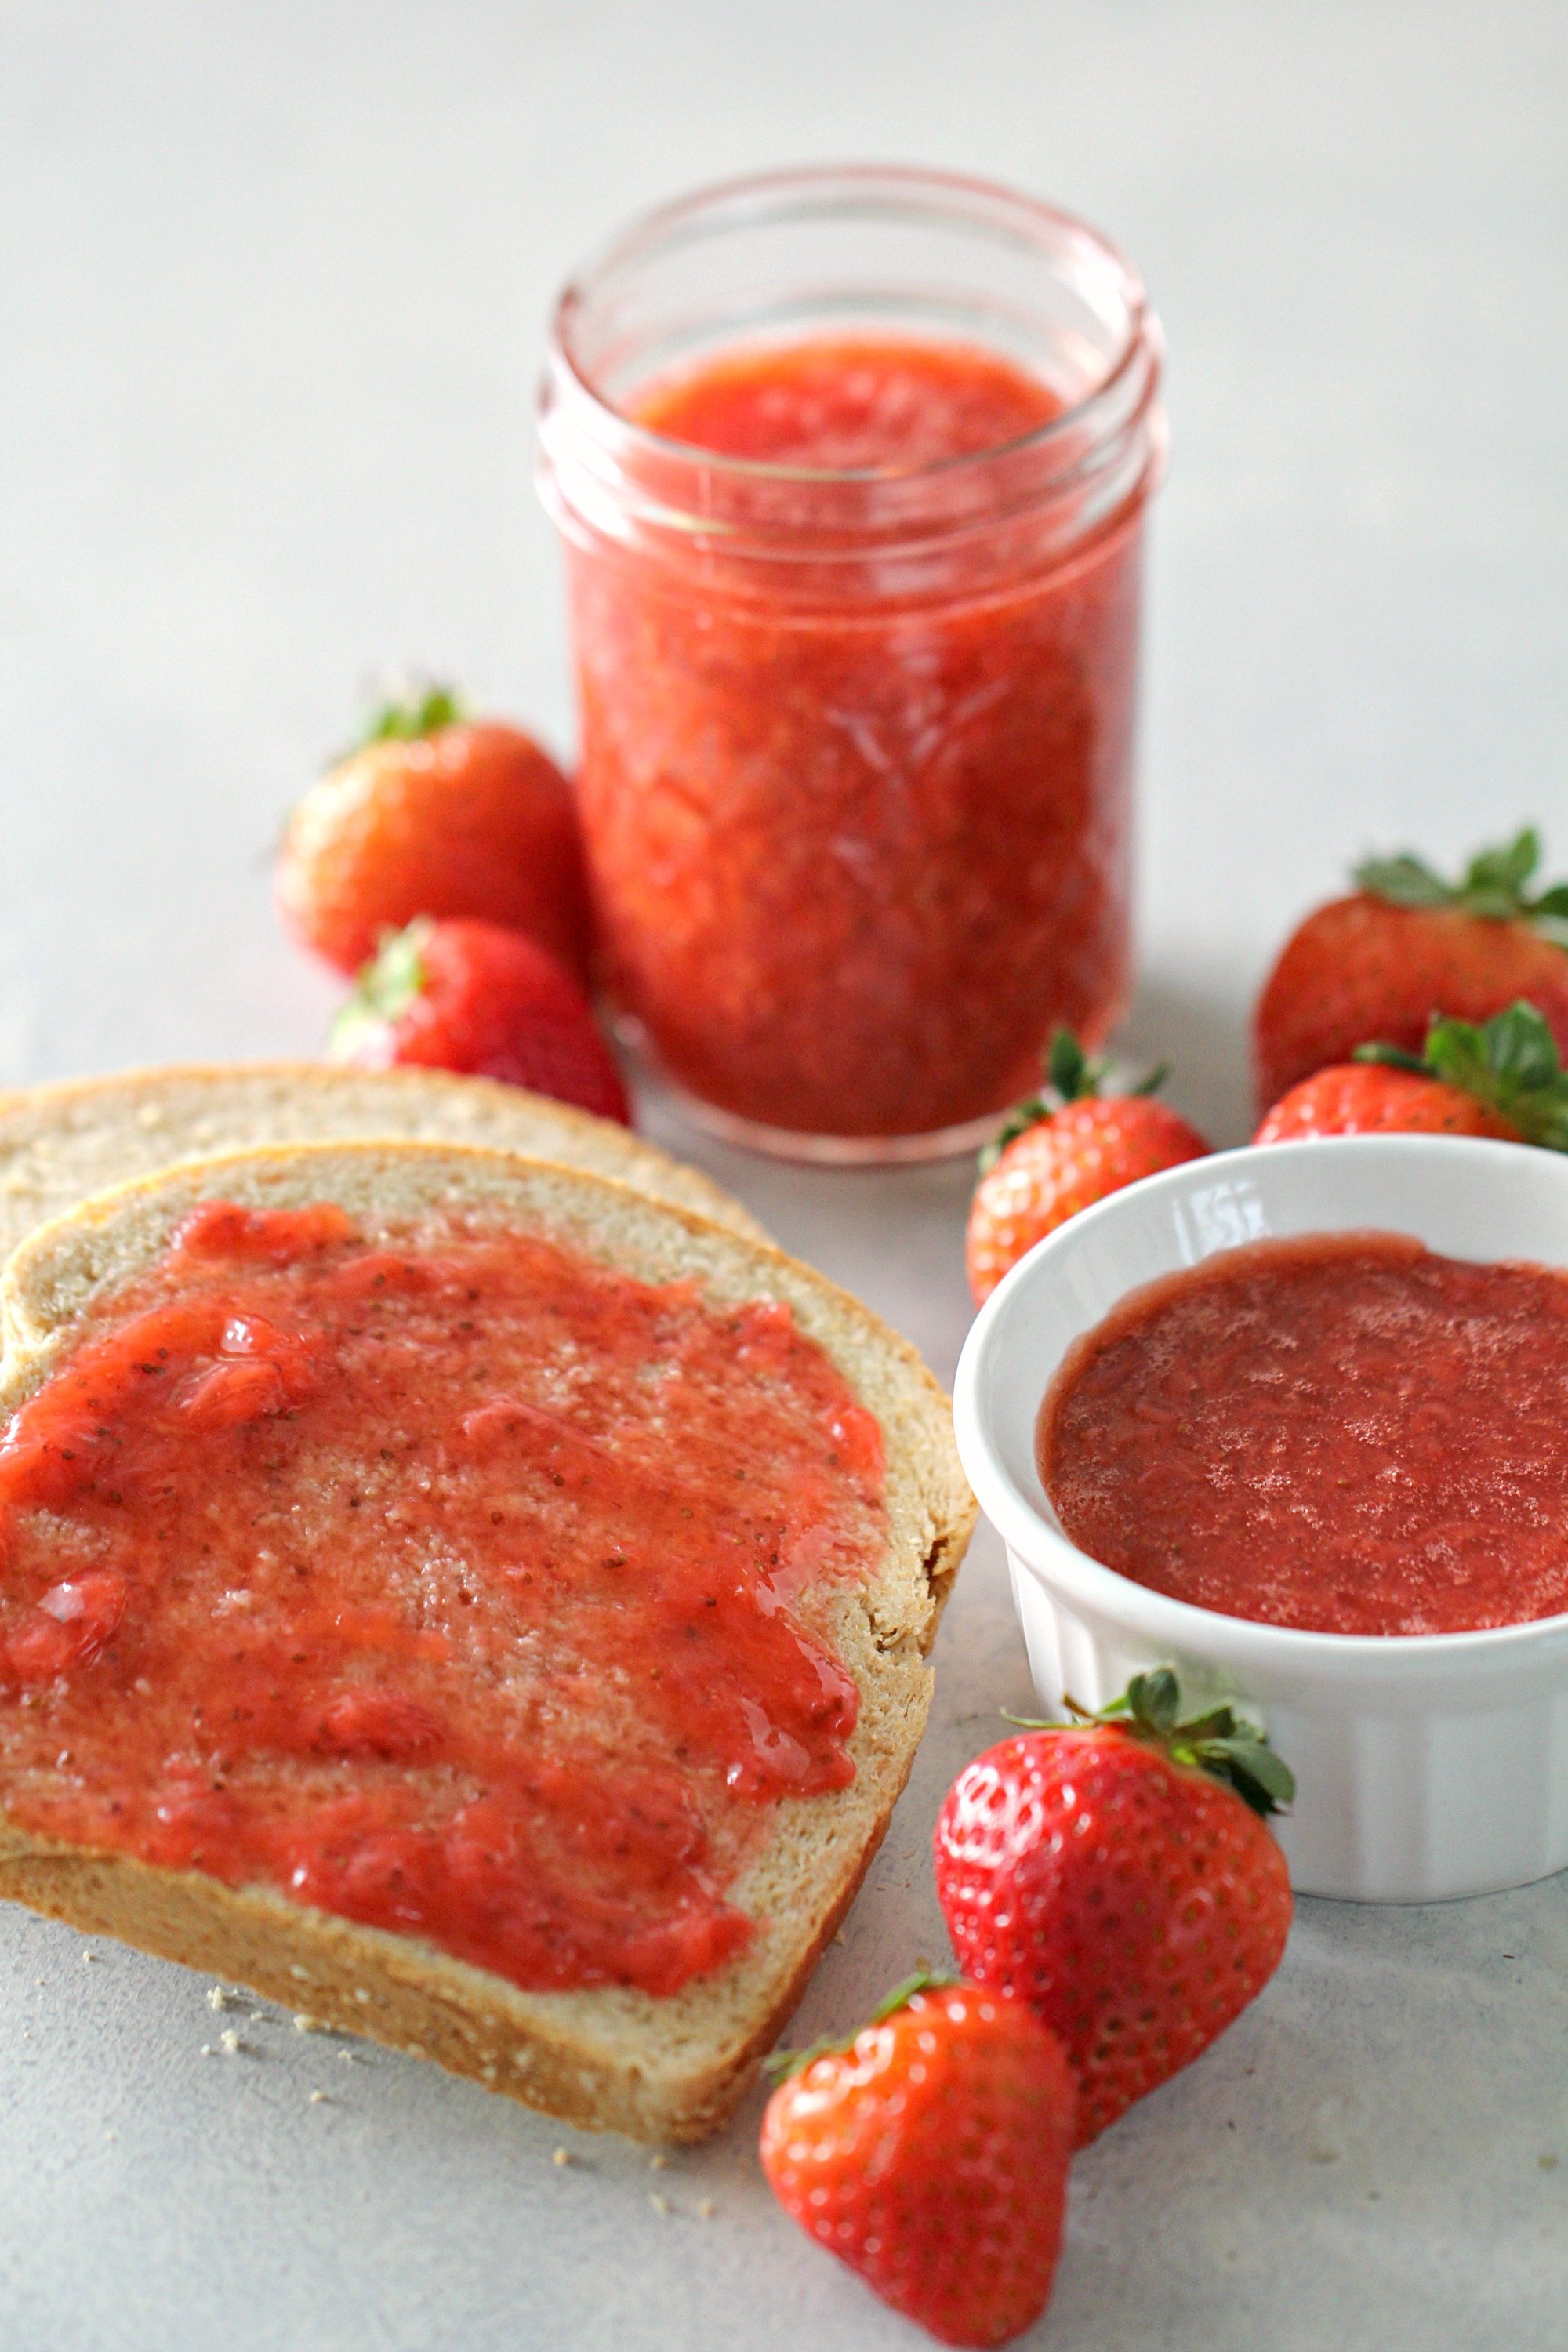 How to Make Instant Pot Strawberry Jam